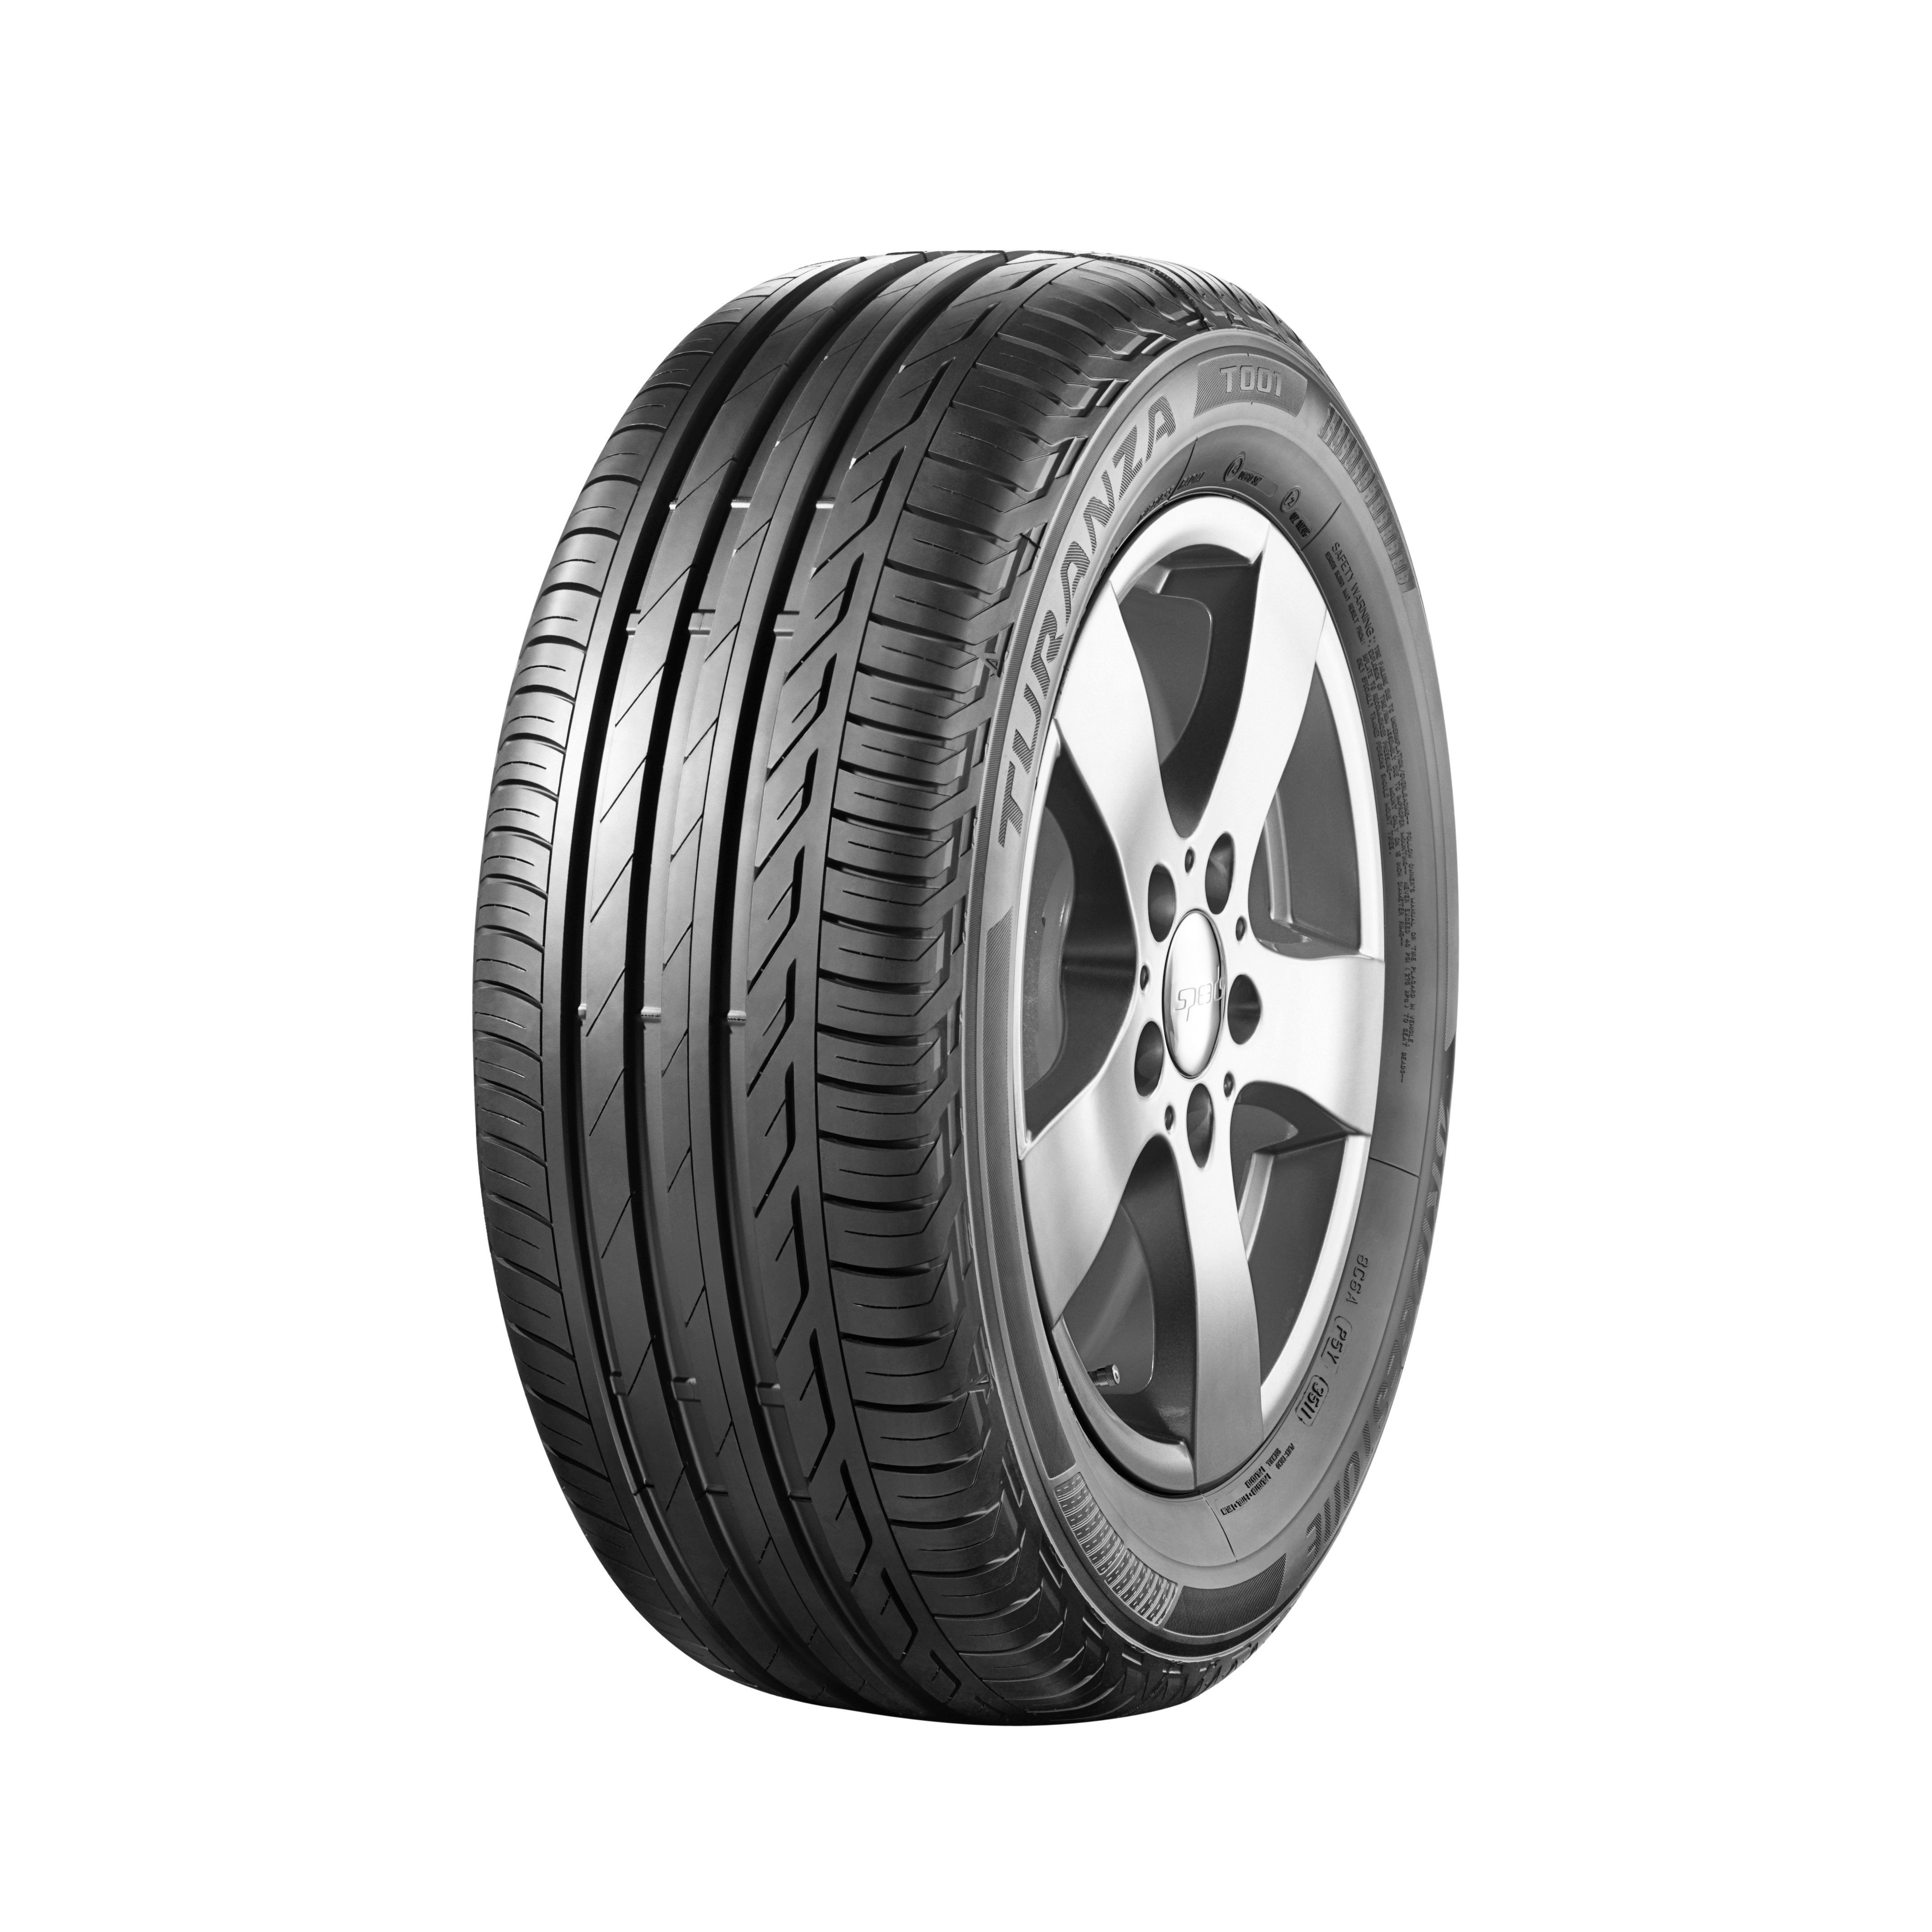 bridgestone tyres selected for new fiat 500x crossover bridgestonet001